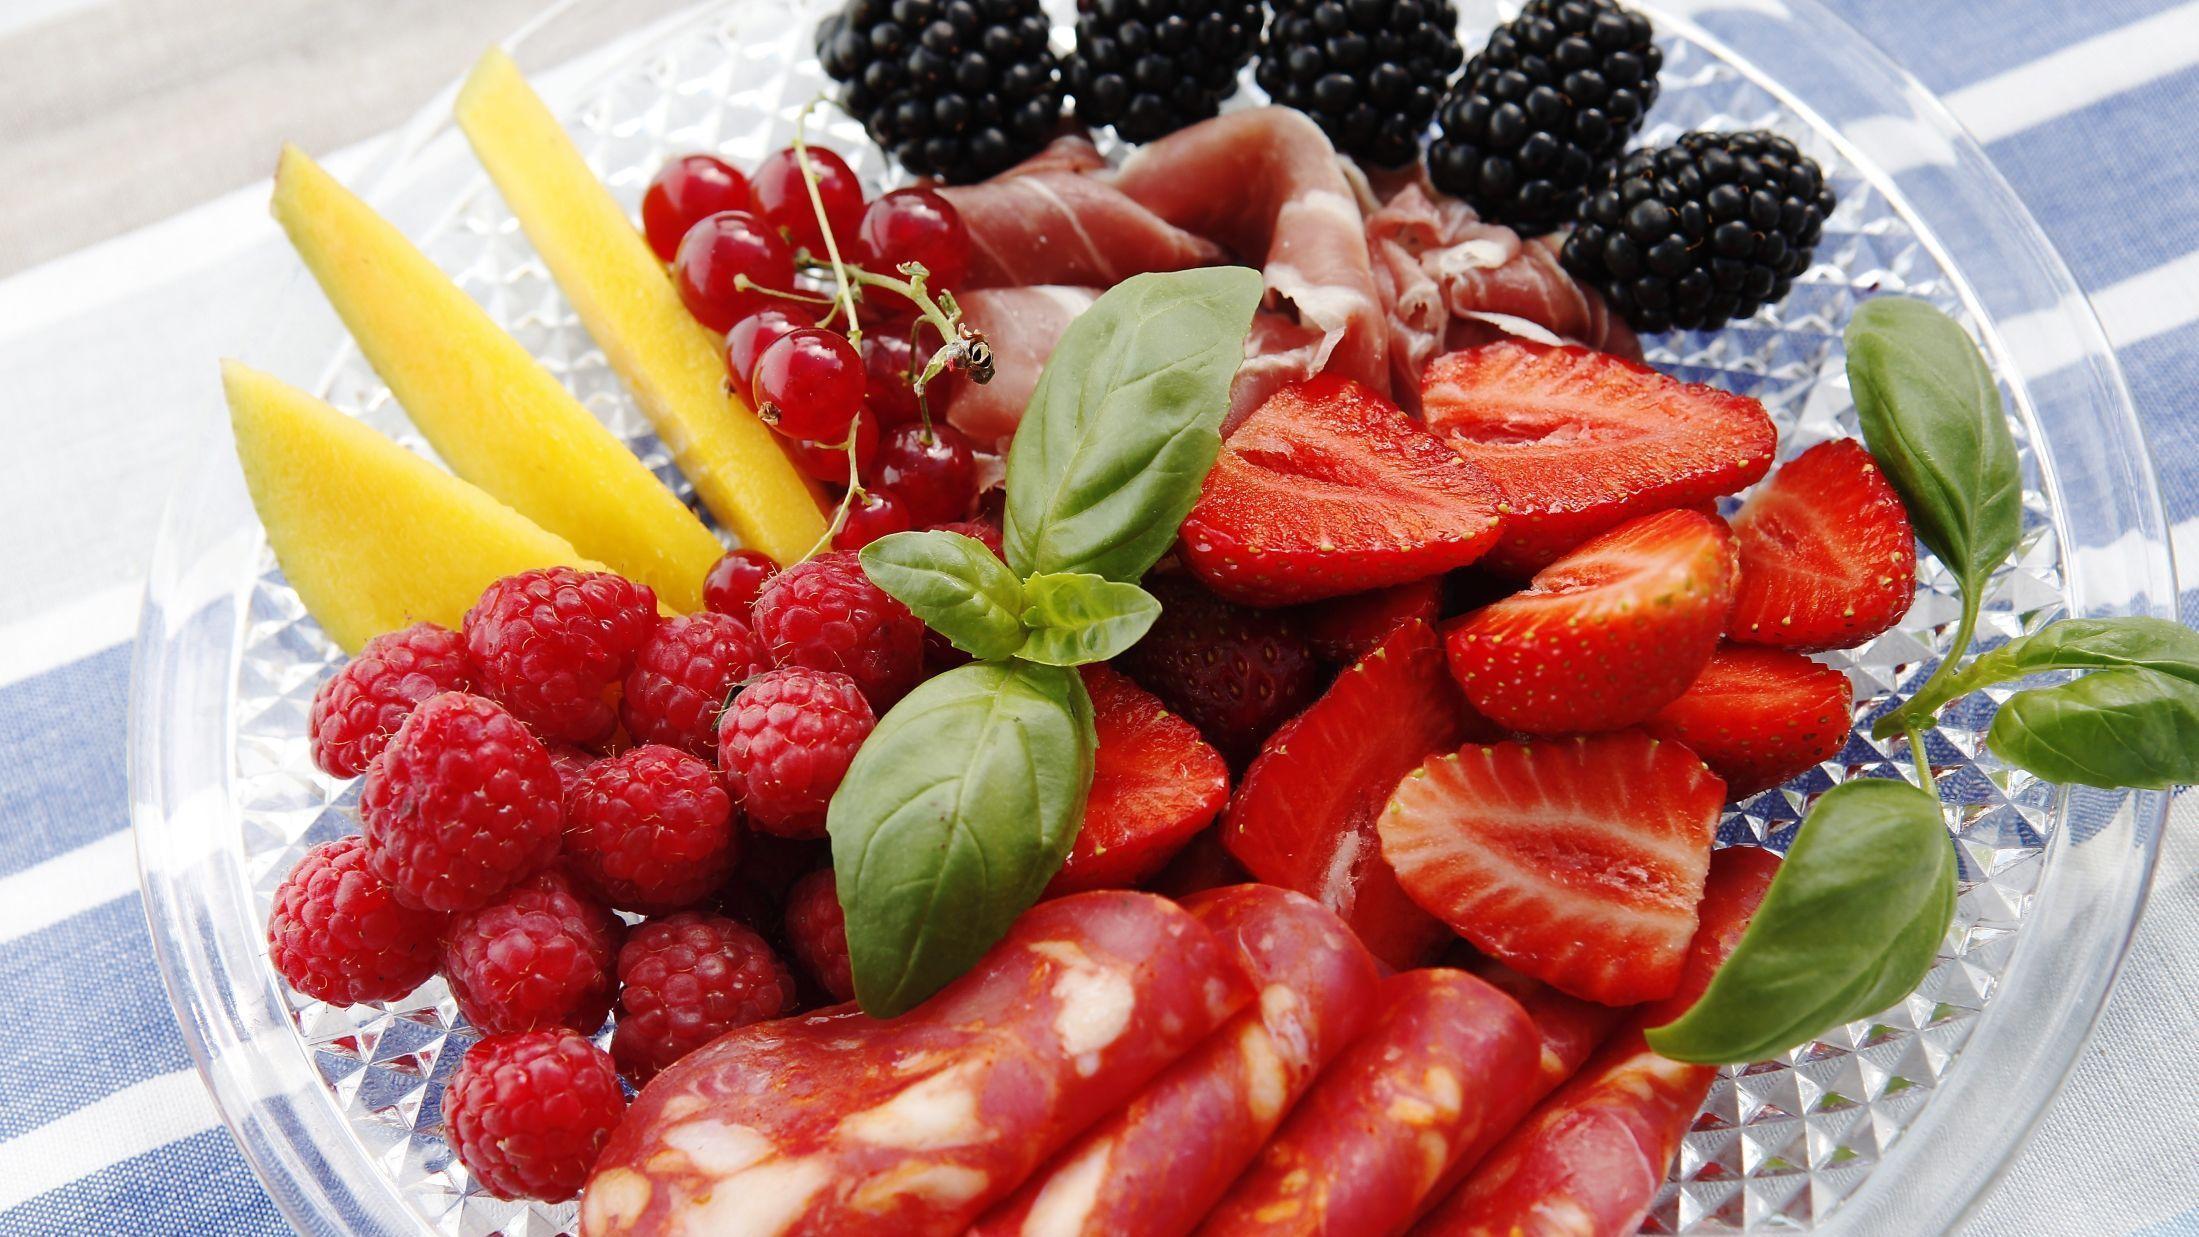 SOMMERENS BÆR: Spekemat med frukt og bær er en deilig sommerkombinasjon. Bare pass på å rengjøre bær samt krydderurter før servering. Foto: Magnar Kirknes/VG